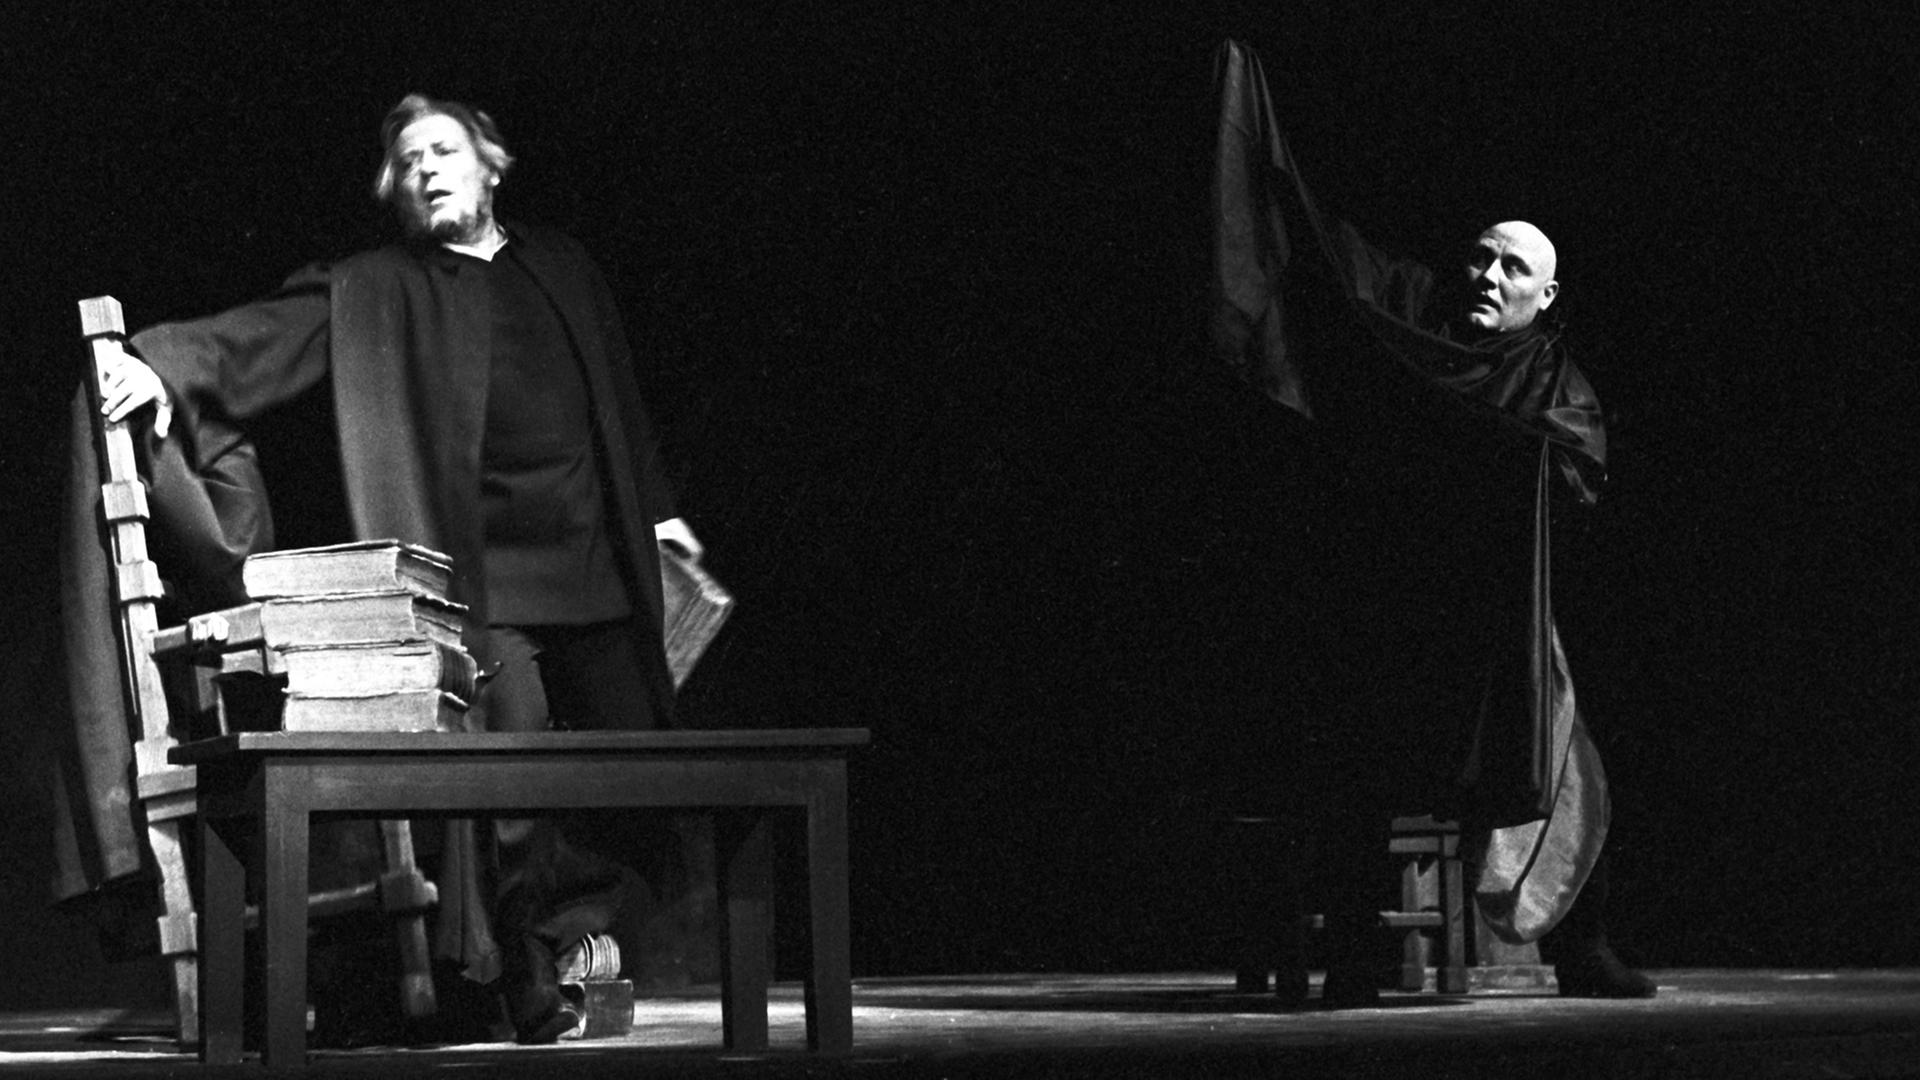 Das Bild zeigt Hans Caninenberg (l) als Faust und Hans Dieter Zeidler als Mephisto (r) während der Generalprobe am 12.12.1963.